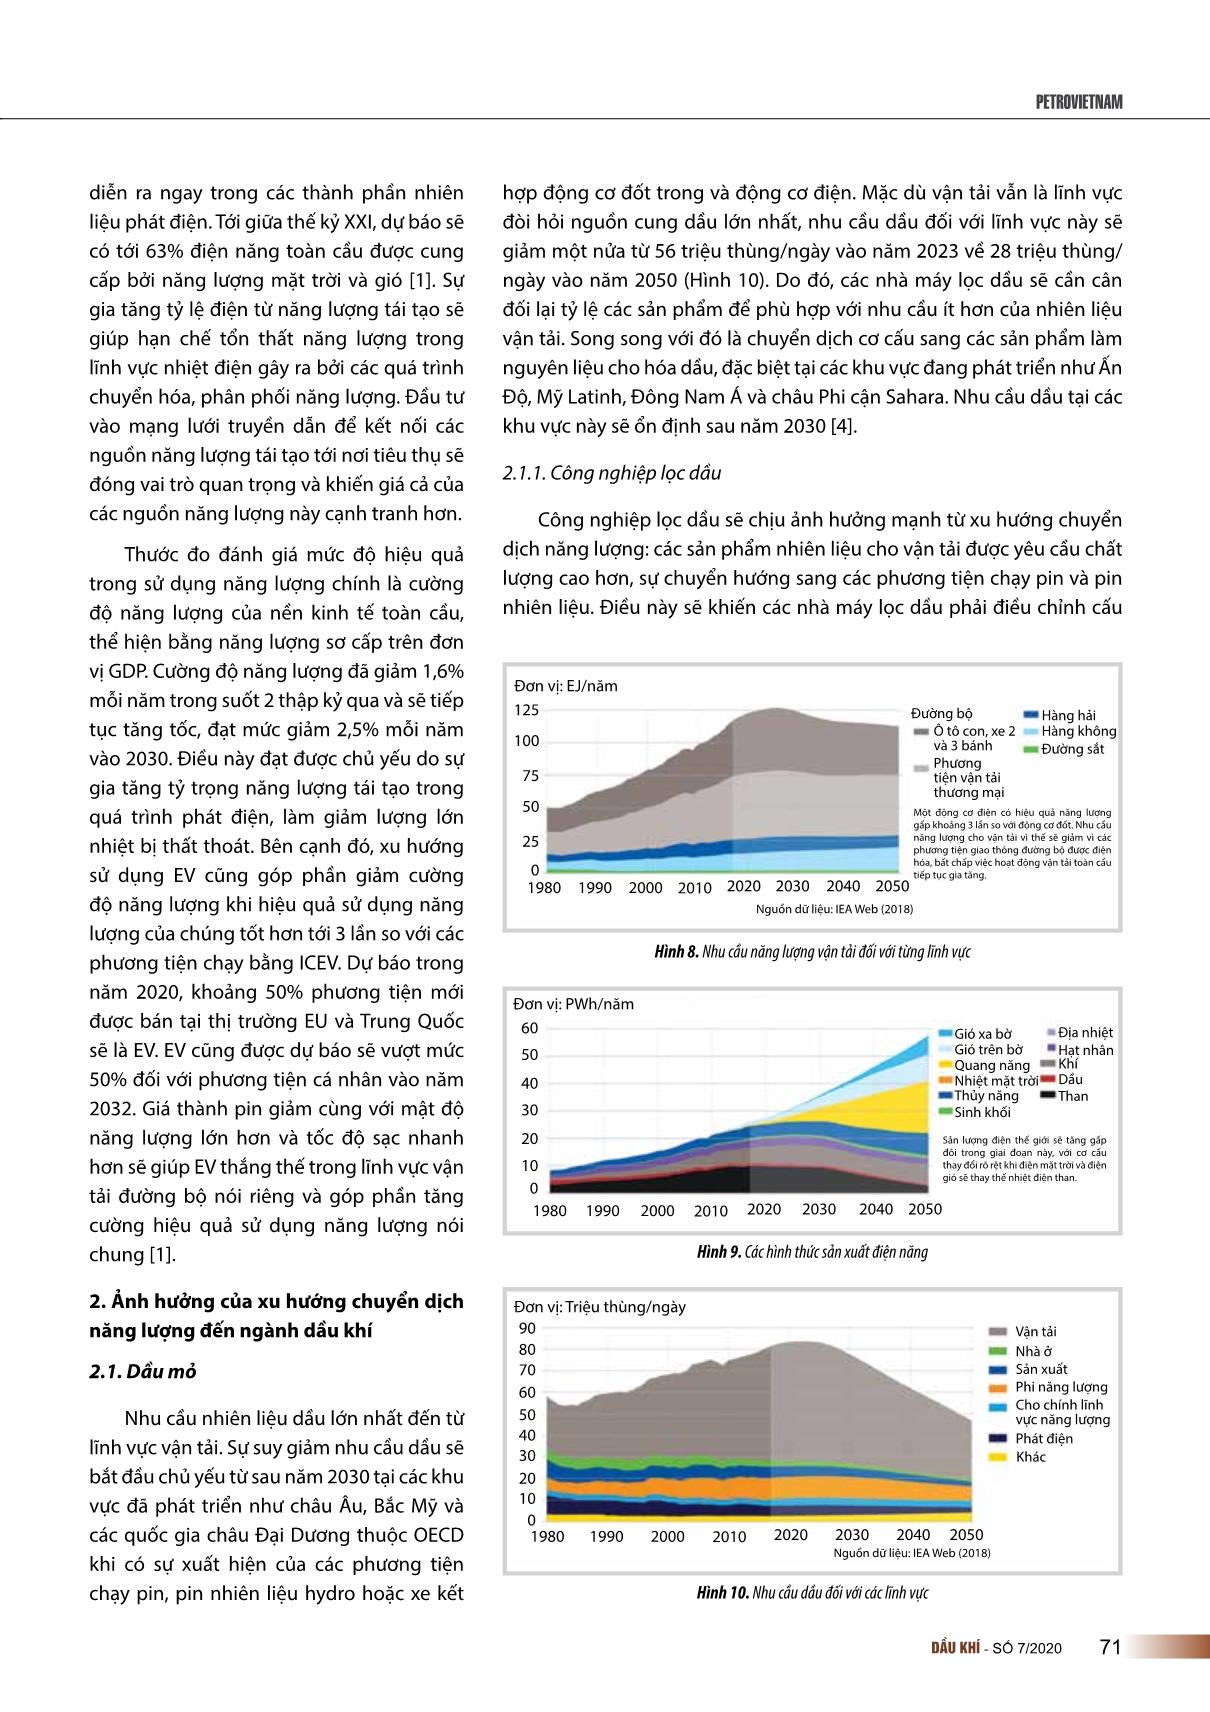 Dự báo xu hướng chuyển dịch năng lượng của thế giới đến năm 2050 trang 5